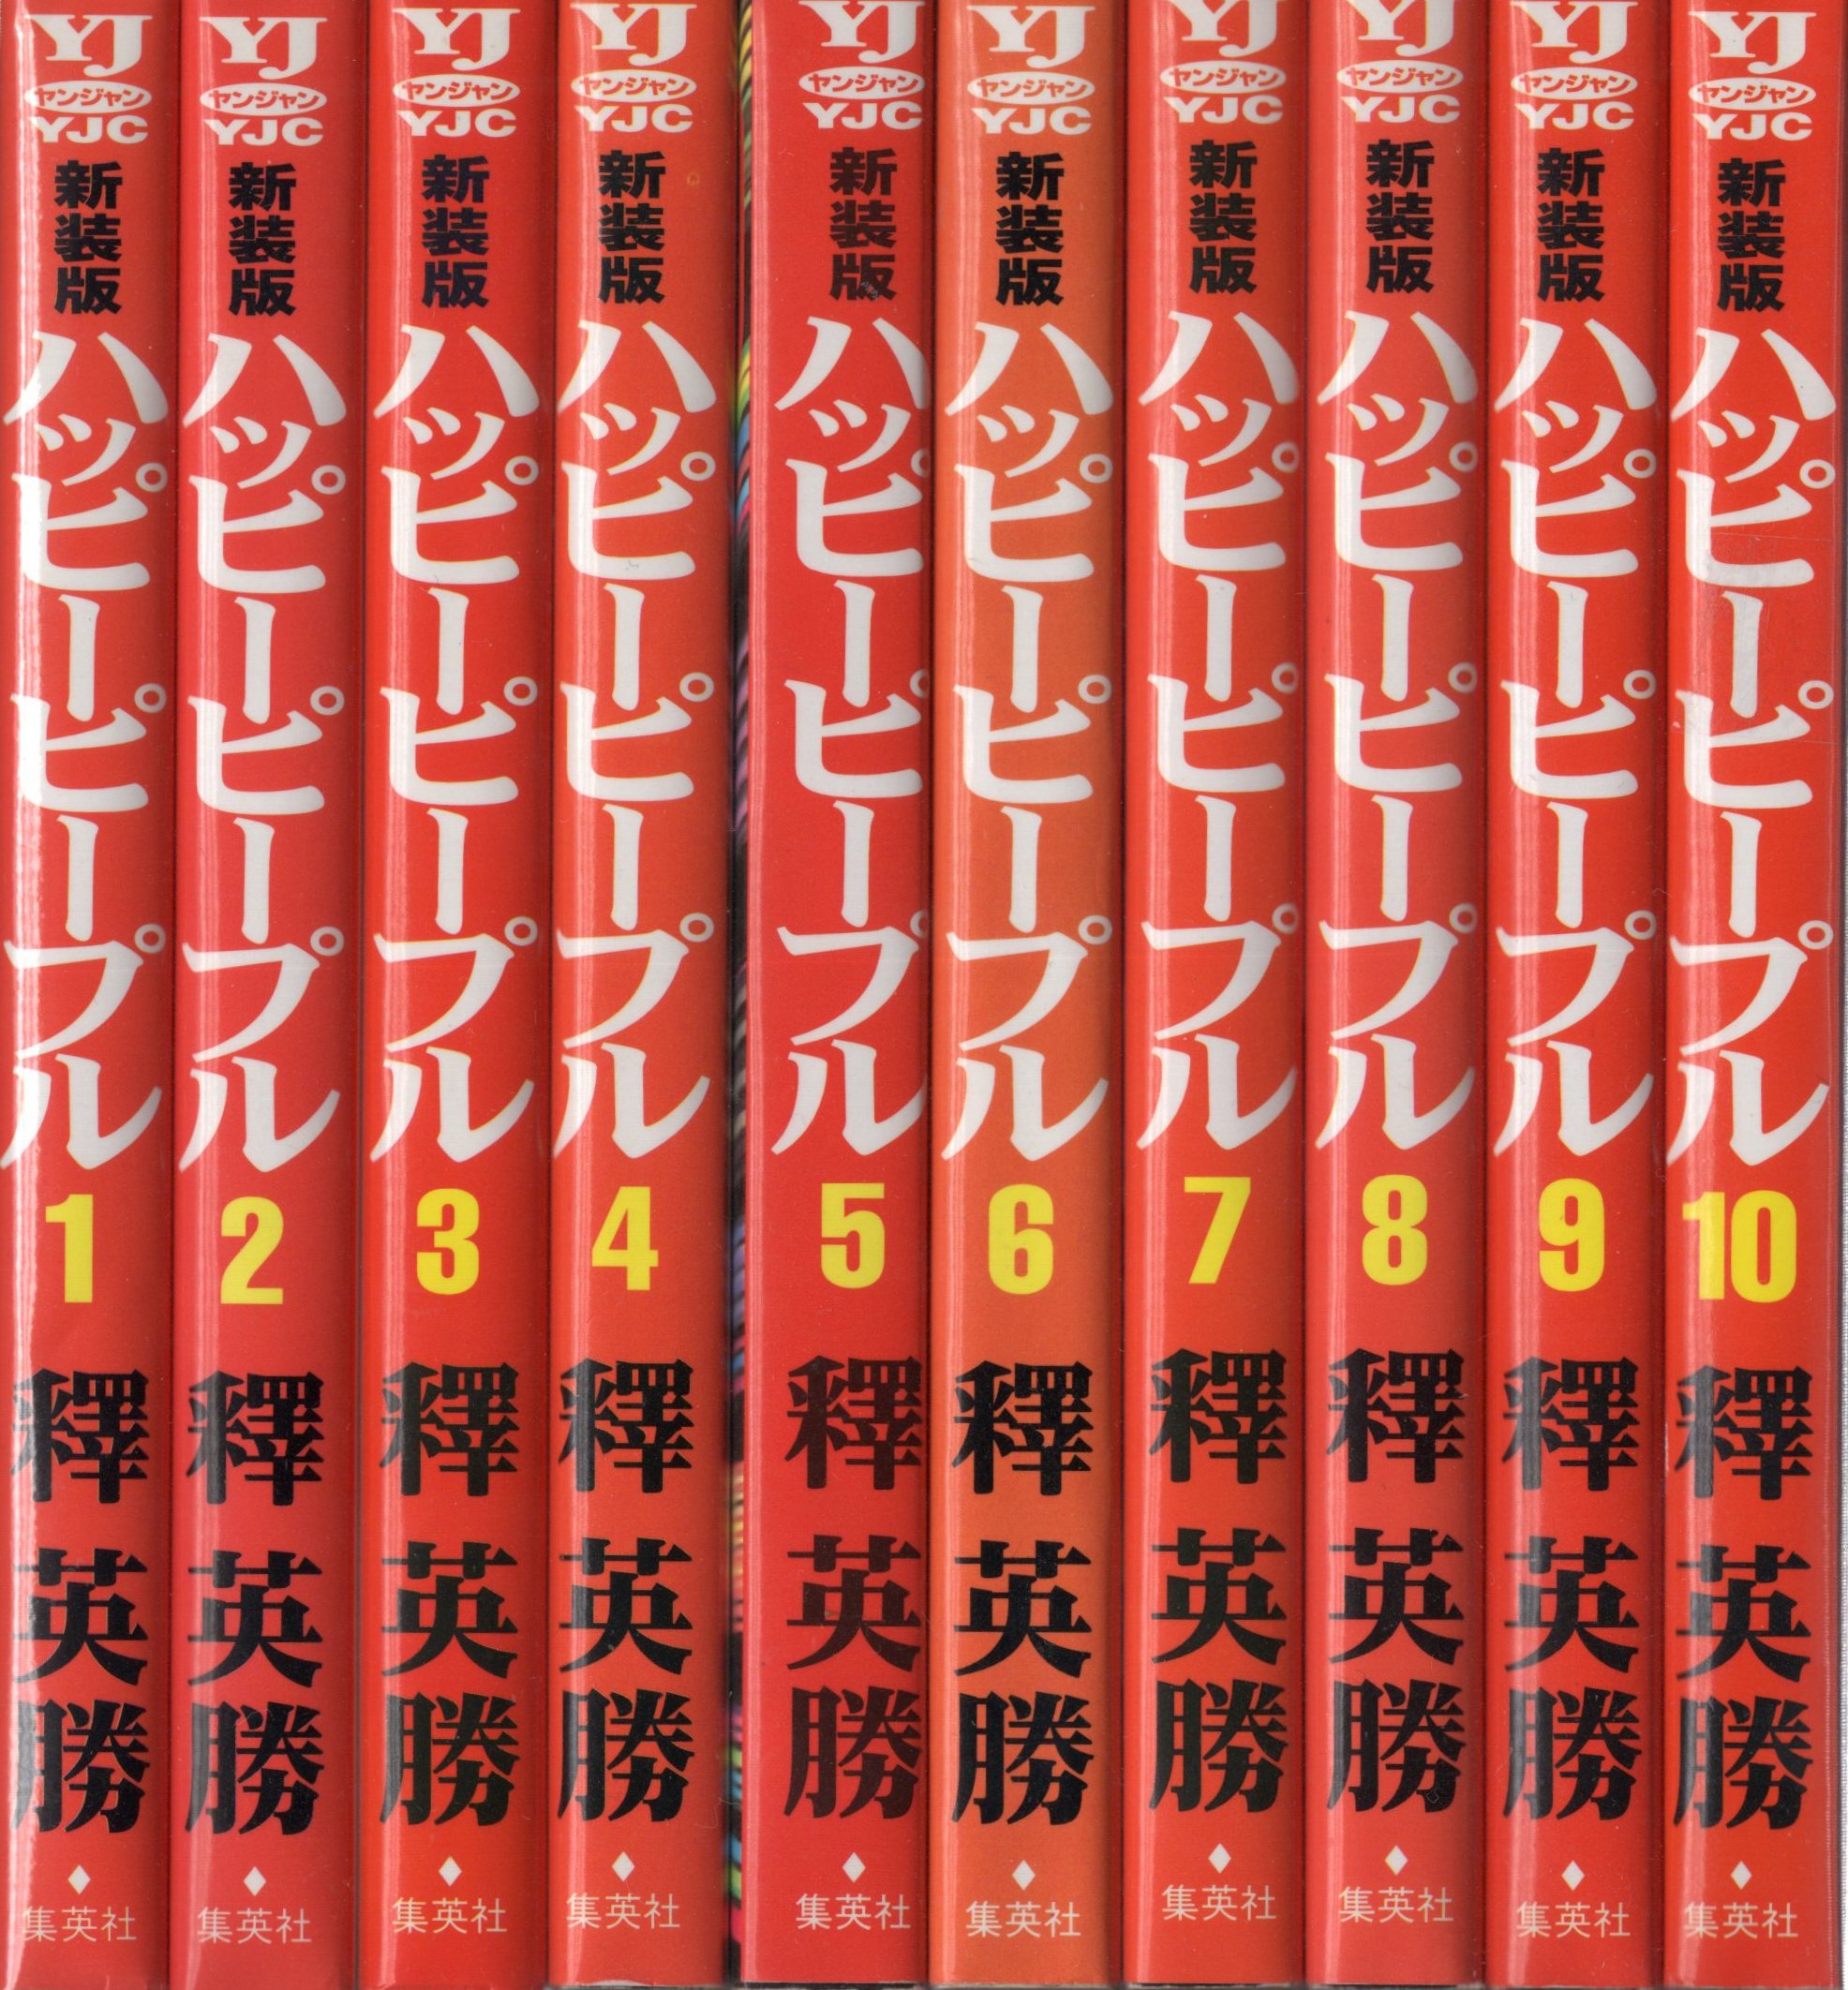 新装版ハッピーピープル1〜10全巻、新ハッピーピープル1〜3巻